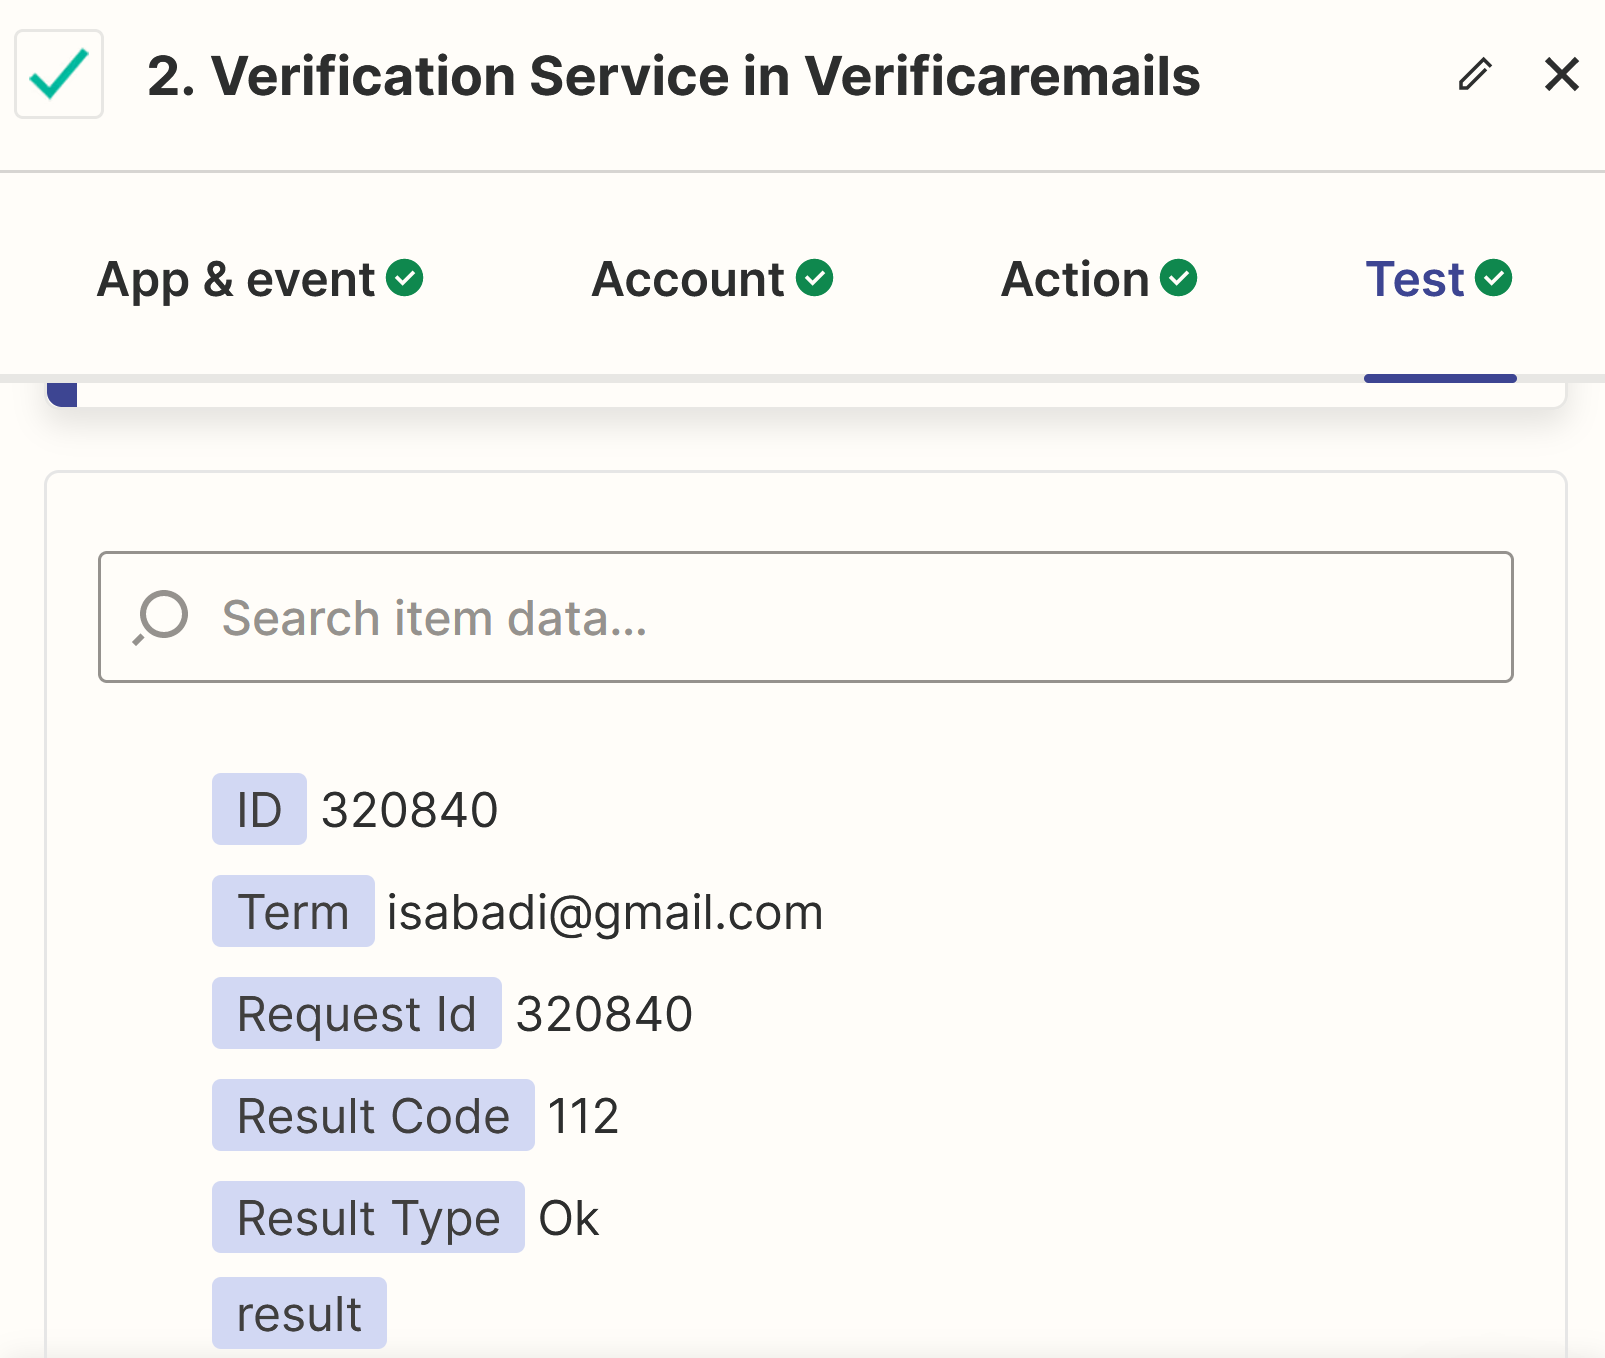 Respuesta verificación de direcciones de correo con Verificaremails